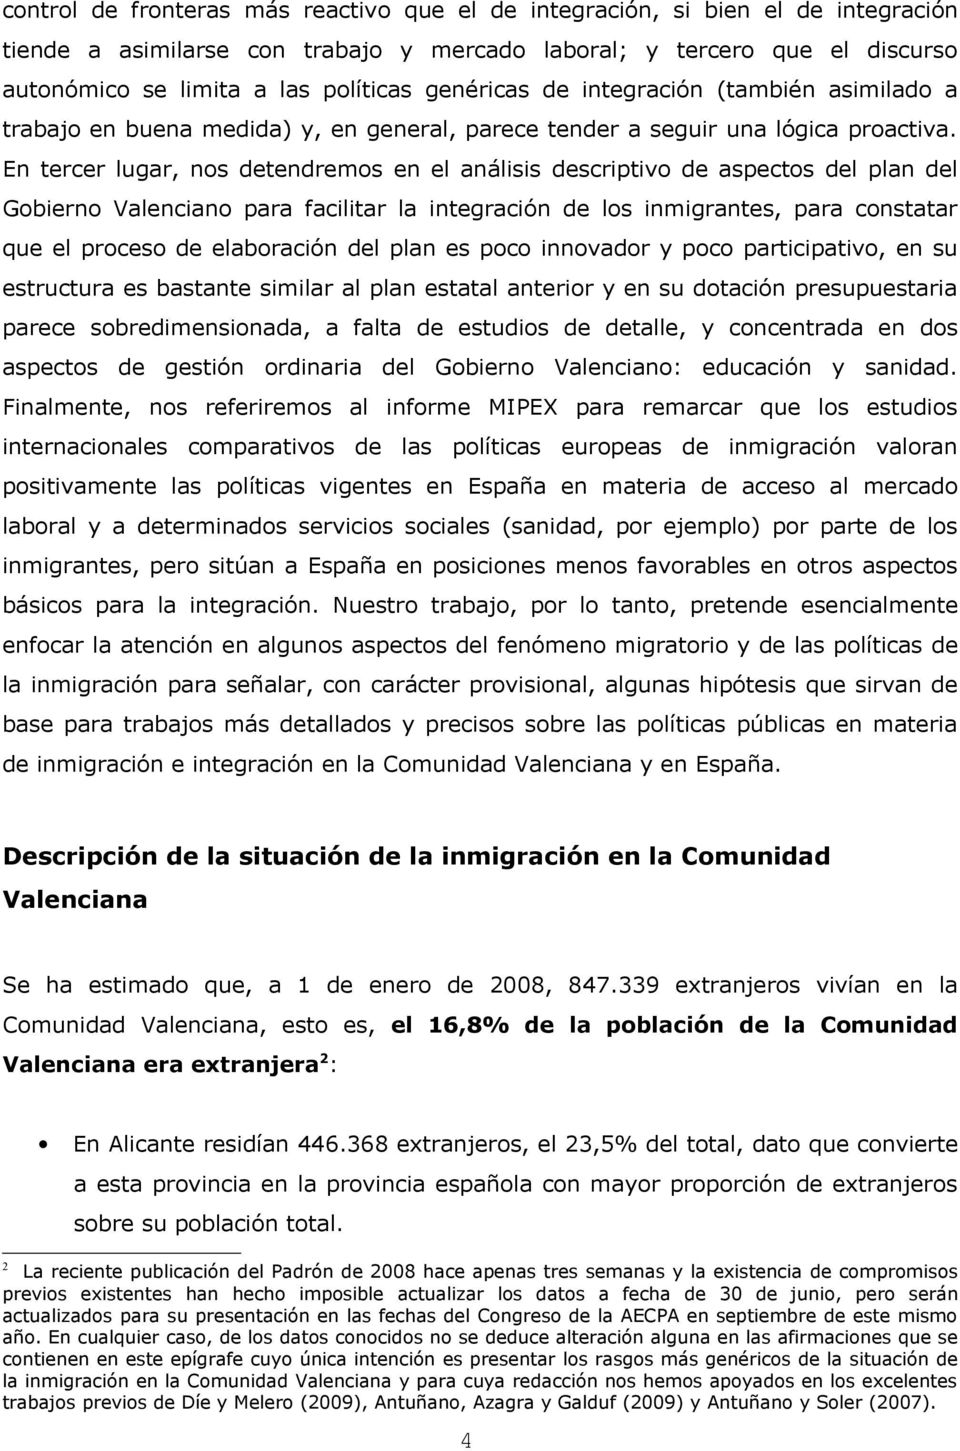 En tercer lugar, nos detendremos en el análisis descriptivo de aspectos del plan del Gobierno Valenciano para facilitar la integración de los inmigrantes, para constatar que el proceso de elaboración